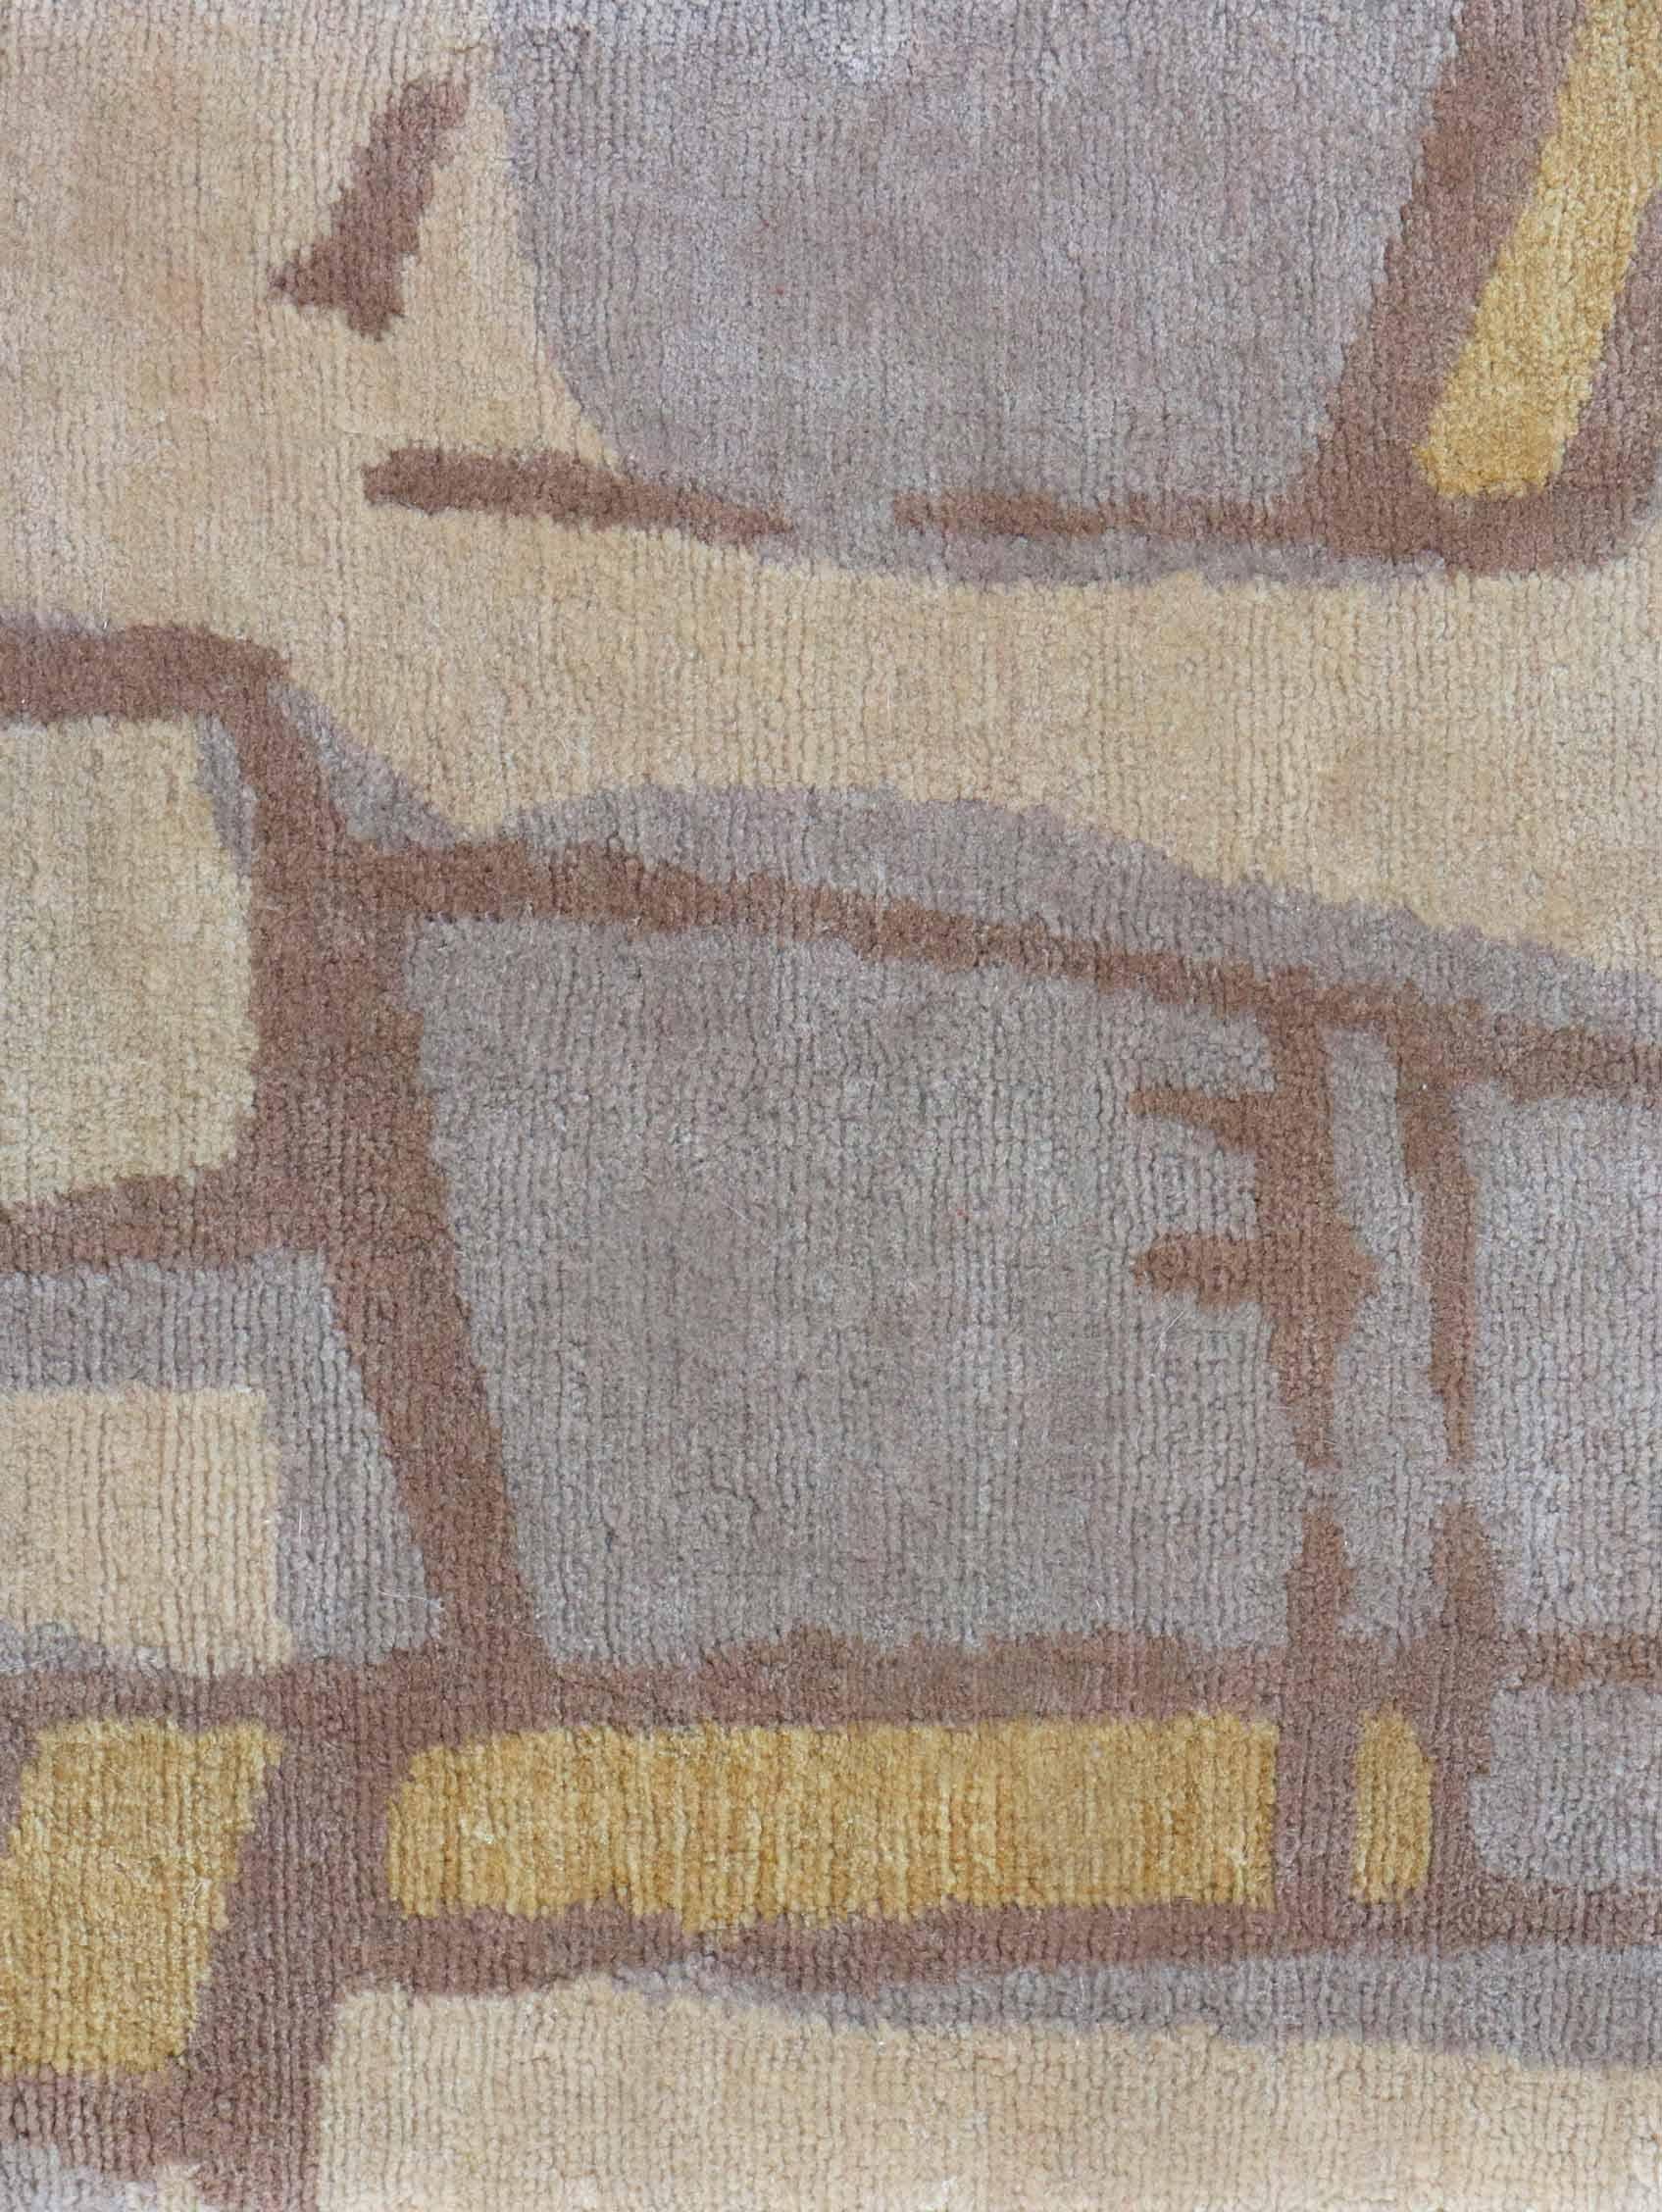 Motif de tapis : Quotidiana - Ilios
MATERIAL : 100% laine mérinos
Qualité : Tissage croisé tibétain, tissé à la main 
Taille : 8'-0